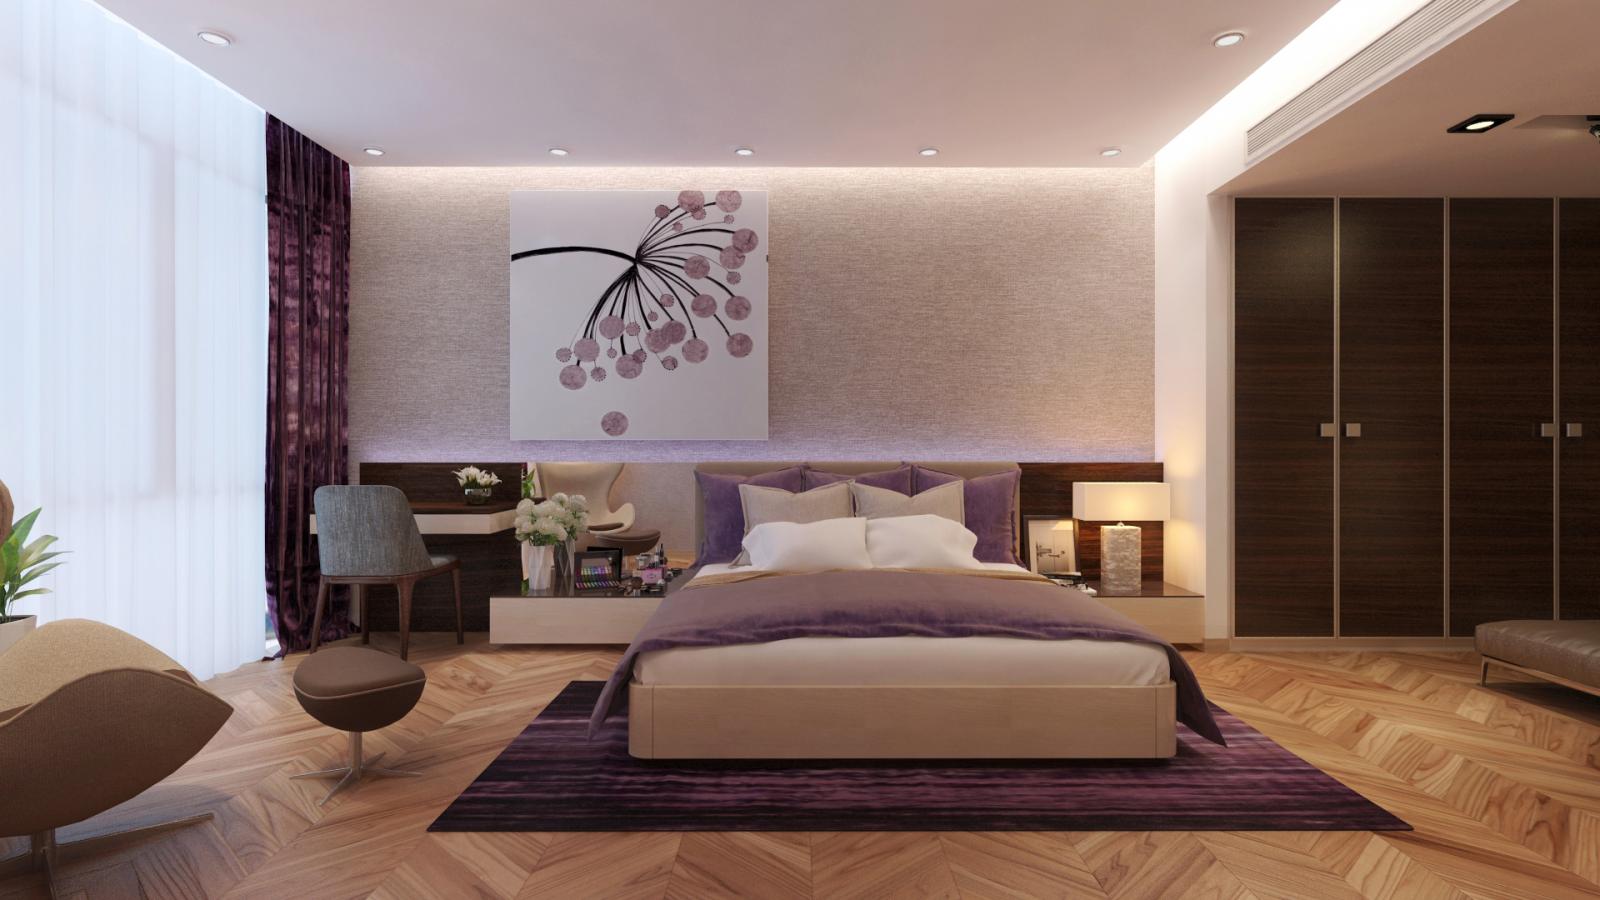 Mẫu thiết kế nội thất phòng ngủ rộng rãi dành cho cô con gái lớn với tông màu tím oải hương nhẹ nhàng, lãng mạn.